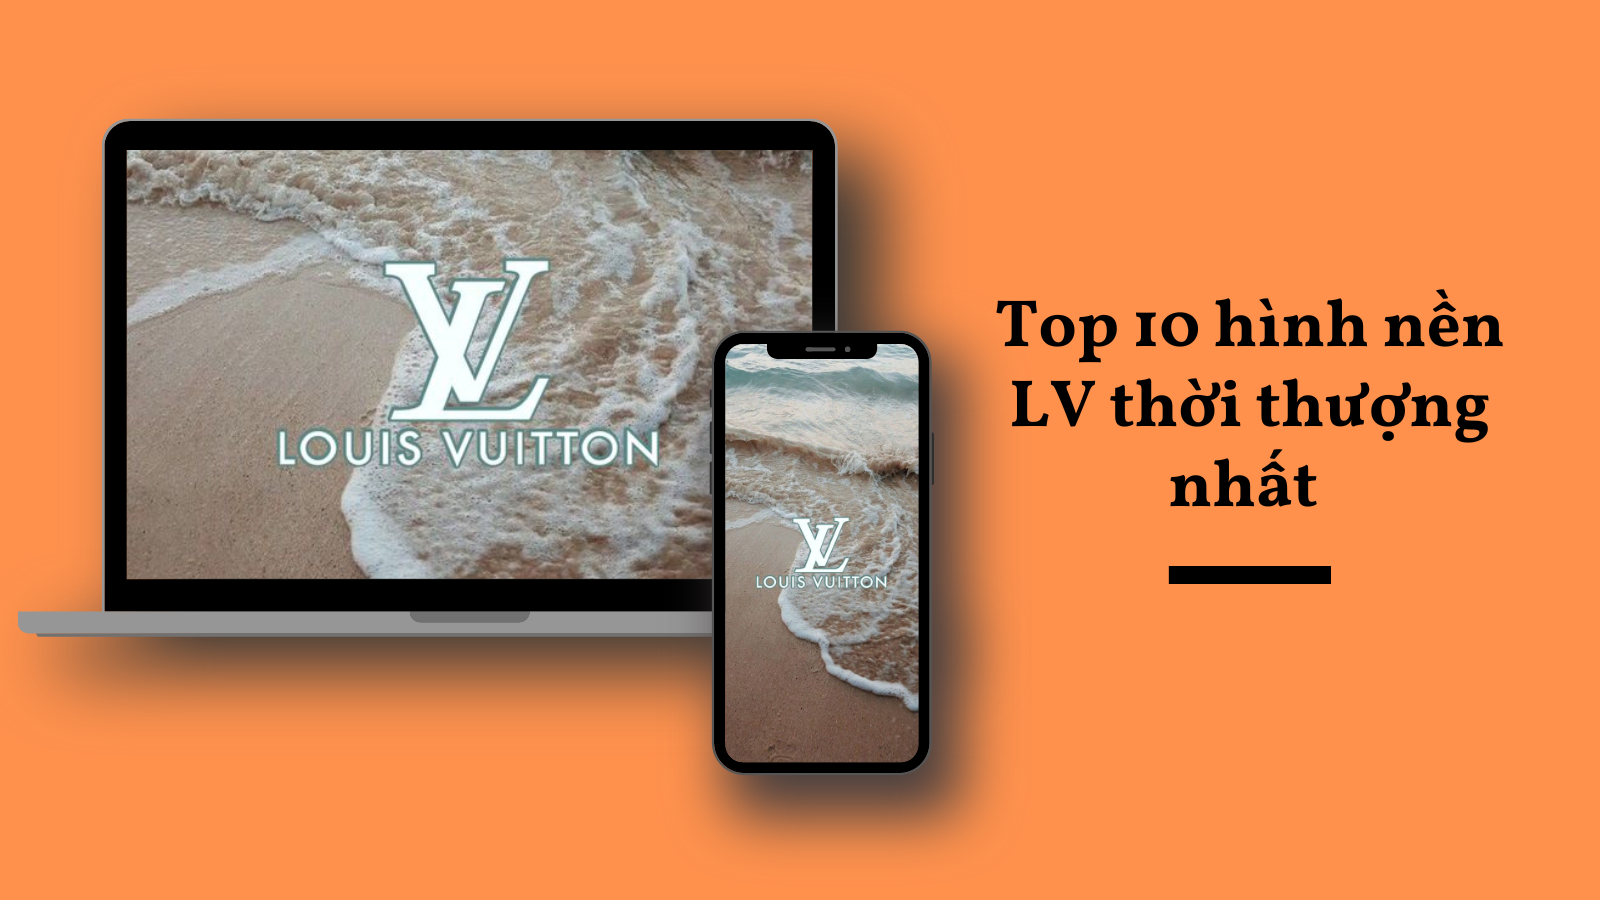 Thương hiệu Louis Vuitton của nước nào? LV của nước nào?